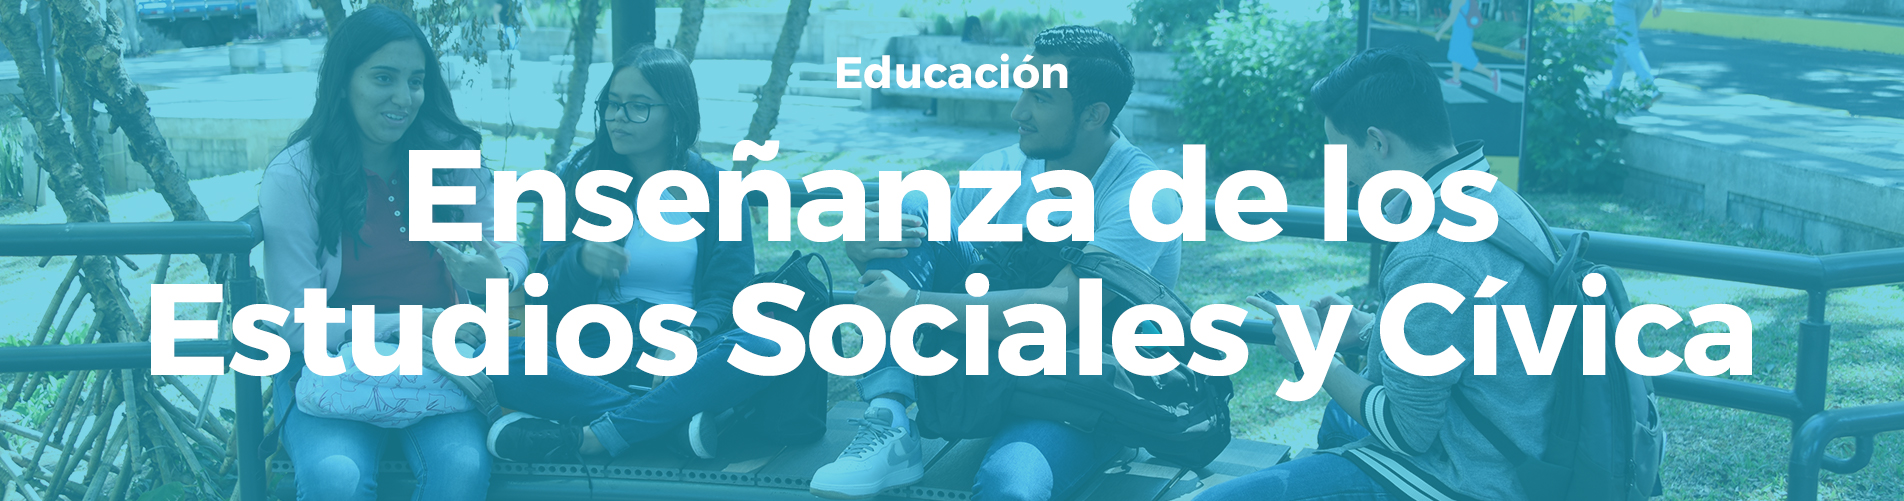 Enseñanza de los Estudios Sociales y Cívica